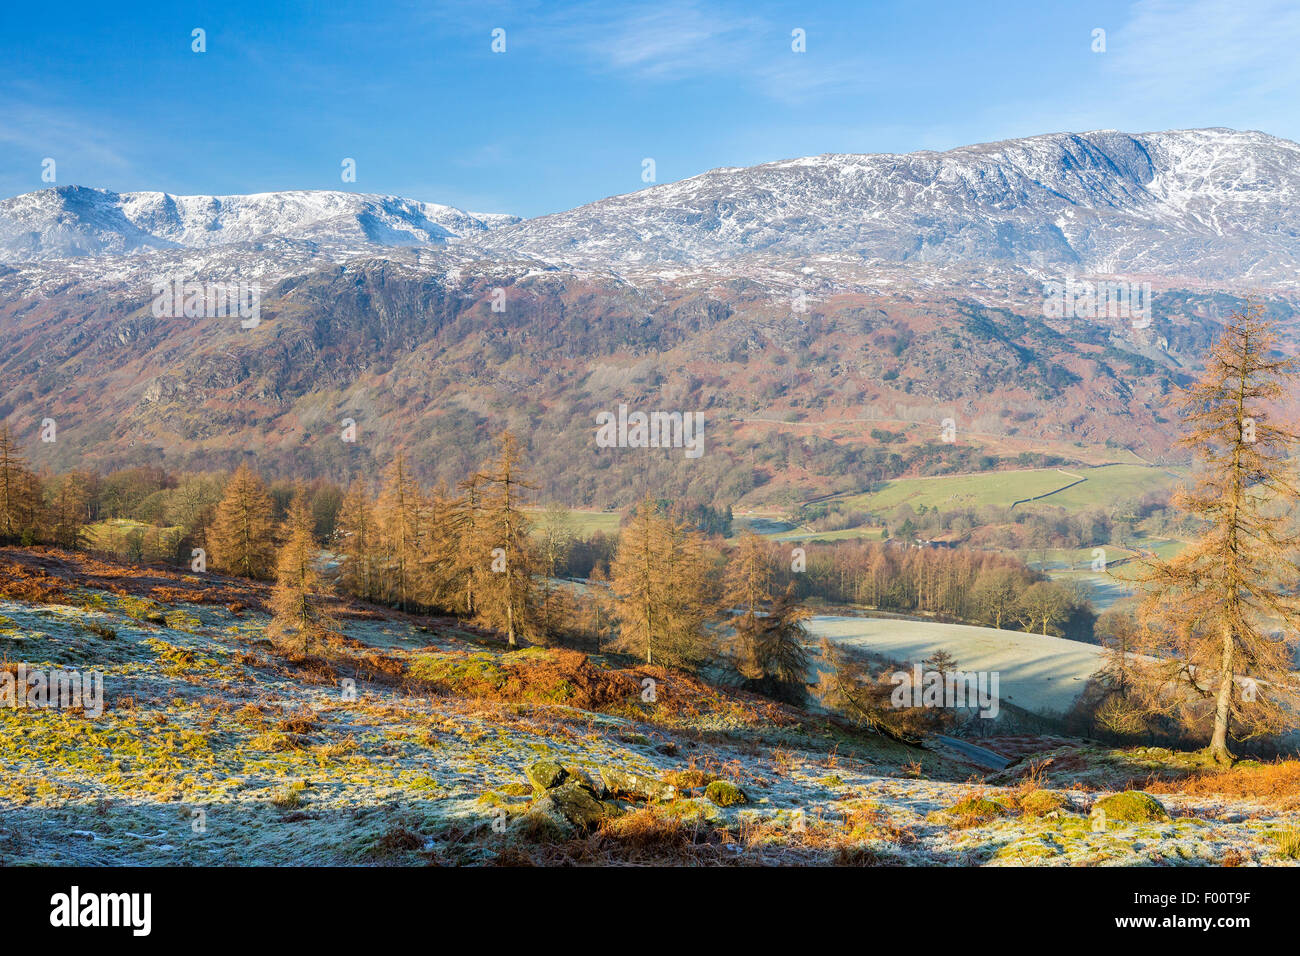 Ein Blick vom Tarn Hows Aufnahme in Richtung The Old Man of Coniston, Nationalpark Lake District, Cumbria, England, Vereinigtes Königreich, Eur Stockfoto